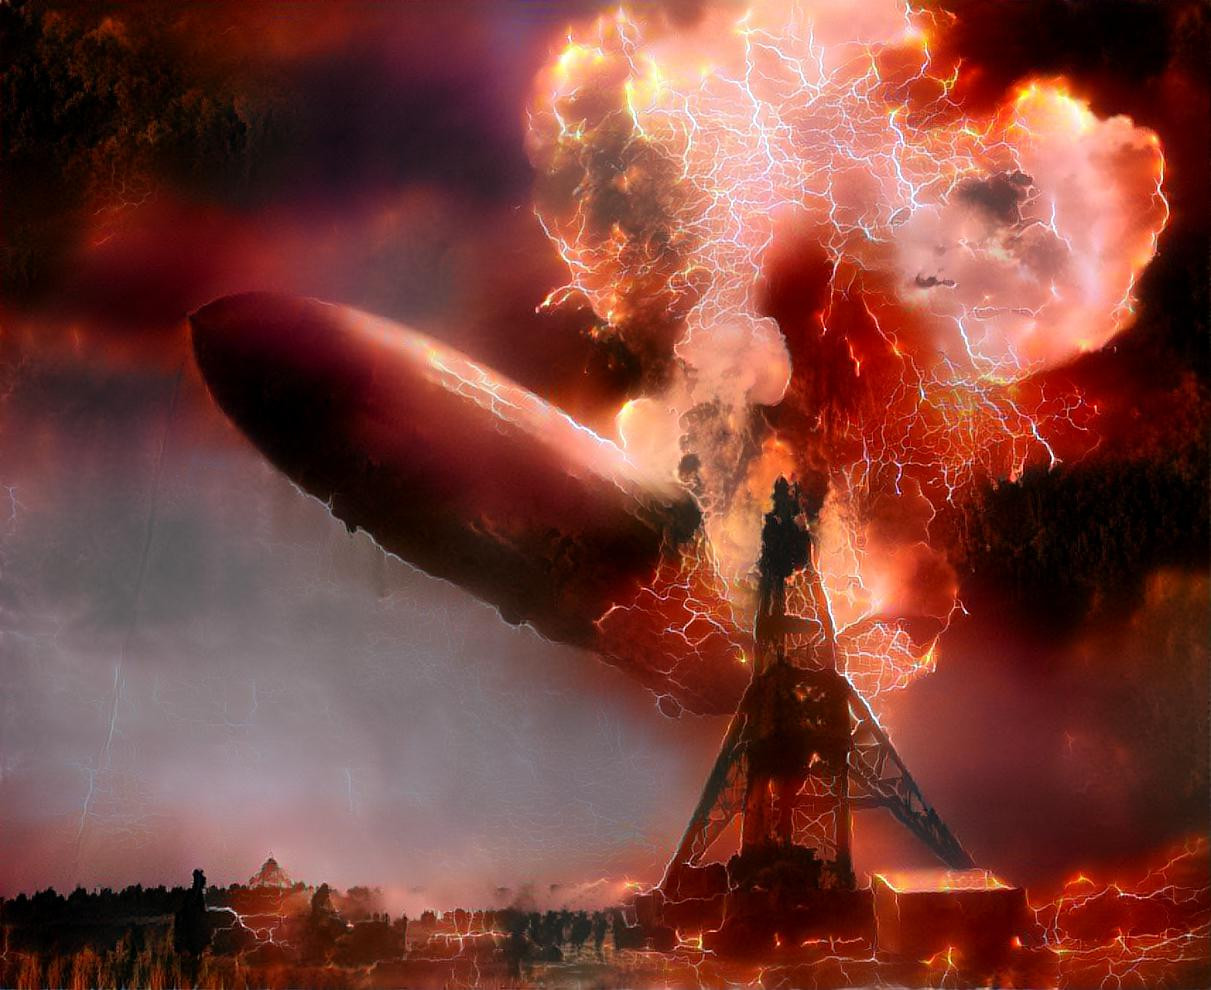 Hindenburg disaster -7 May, 1937